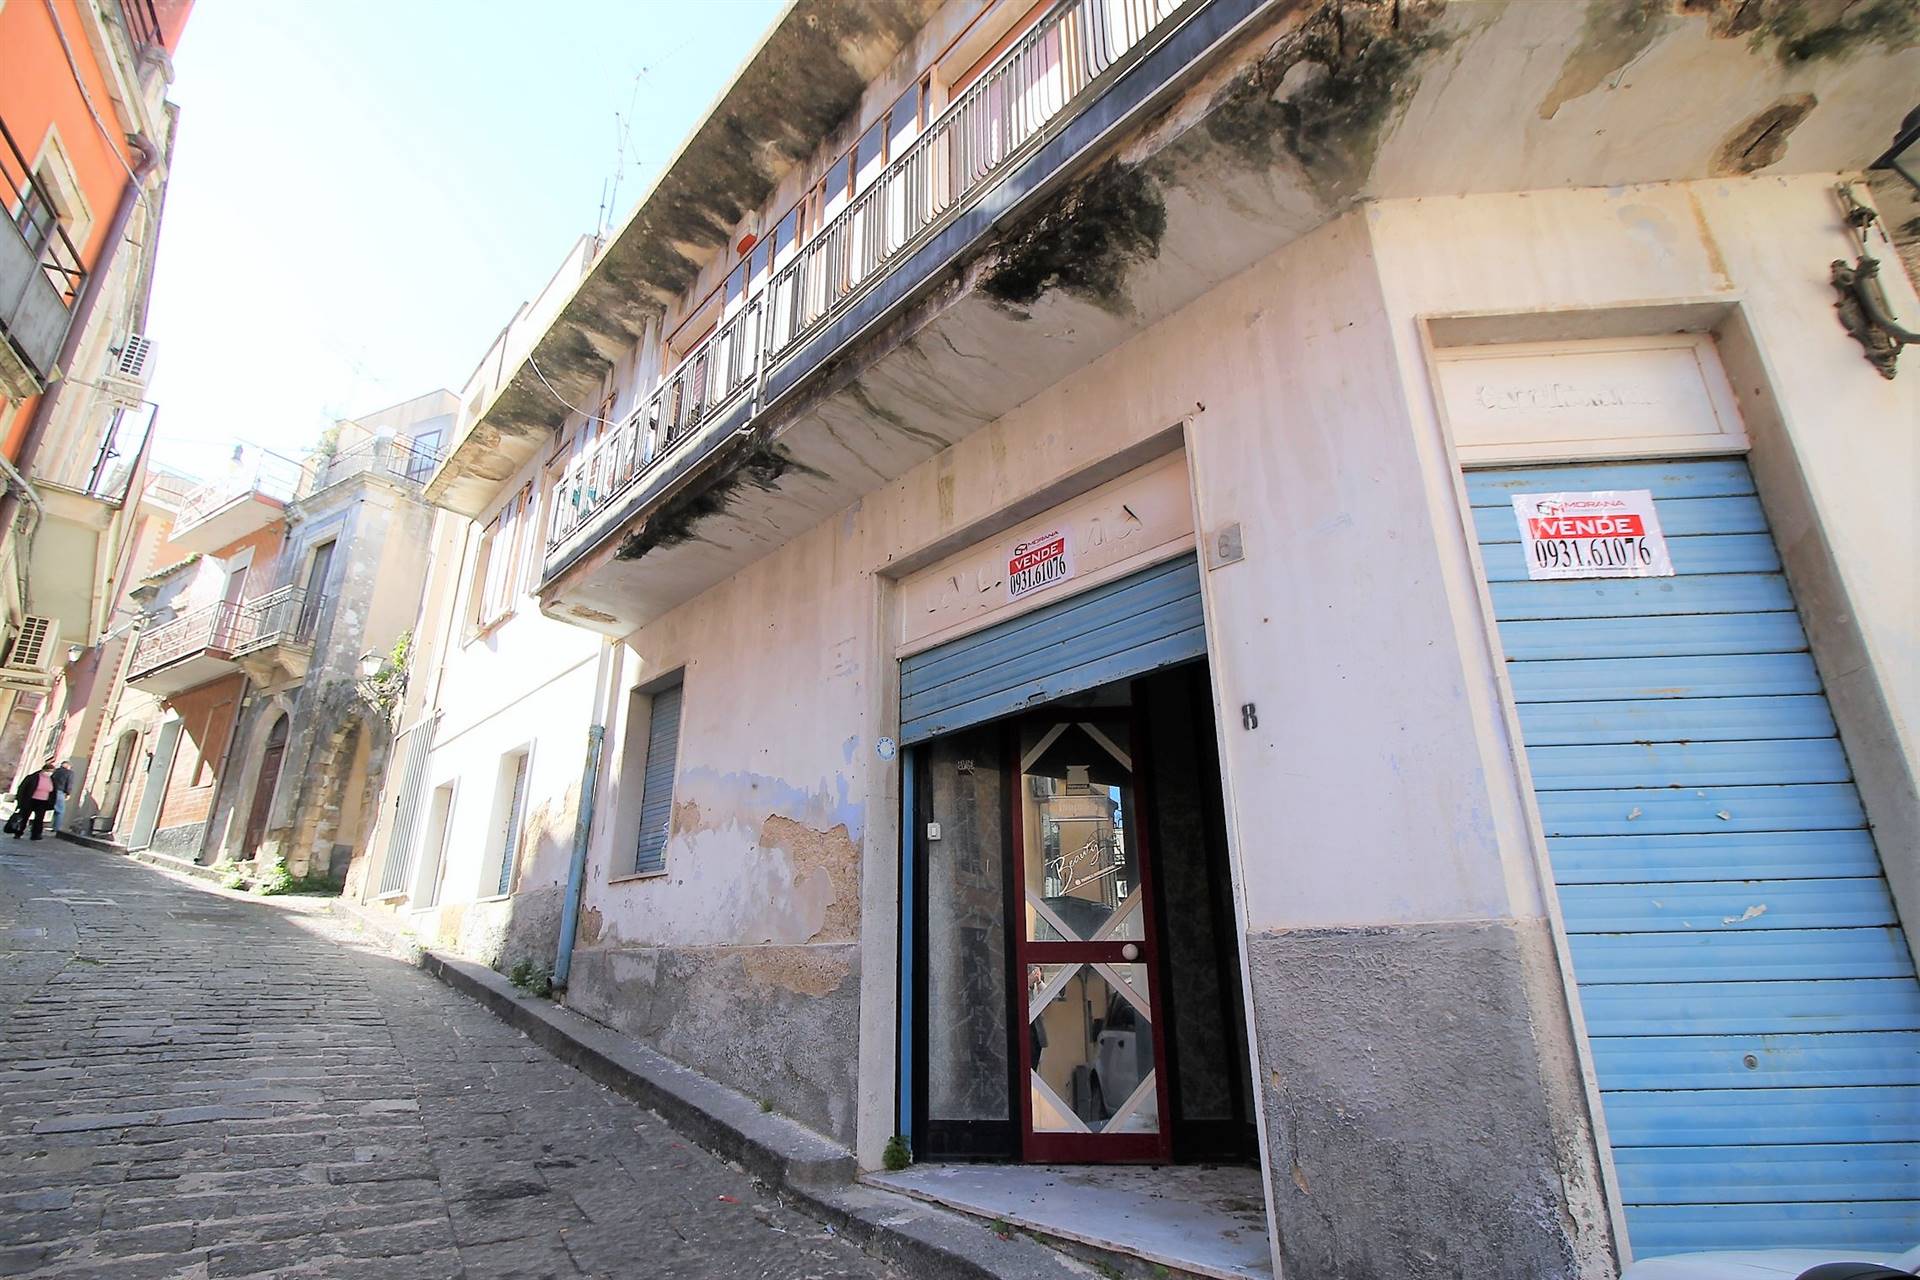 Appartamento in vendita a Melilli, 1 locali, prezzo € 25.000 | CambioCasa.it